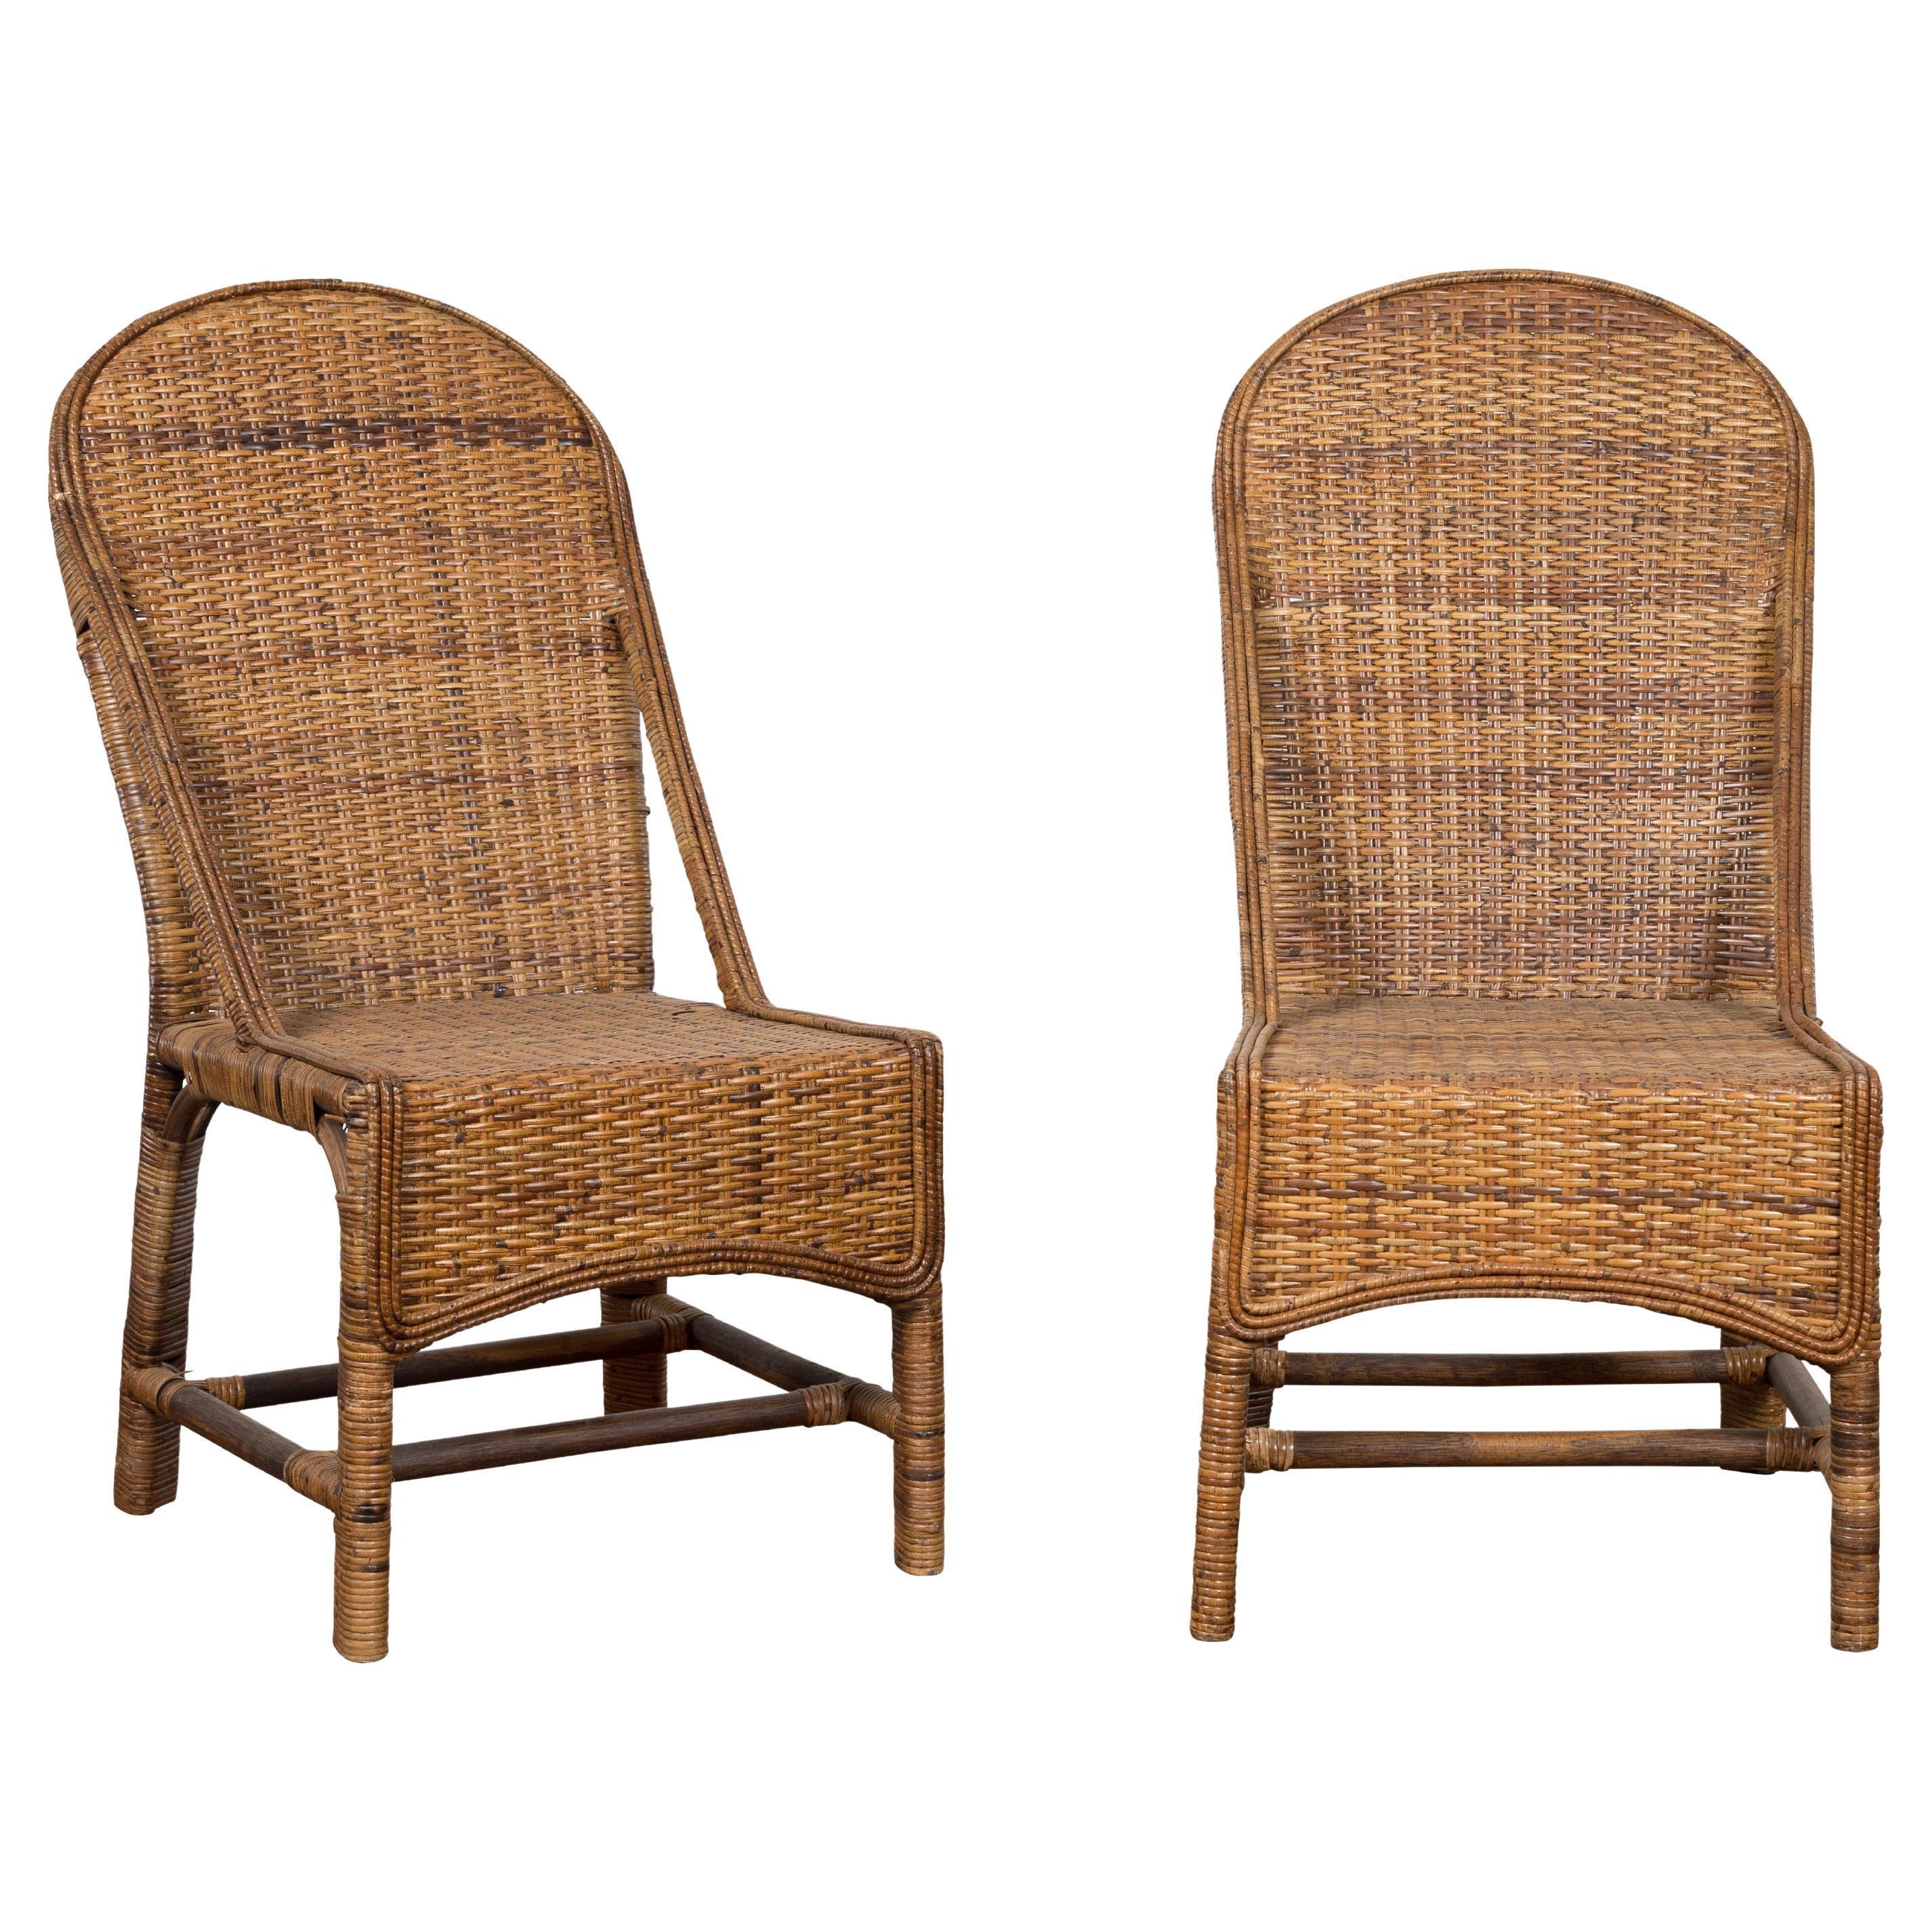 Paire de chaises birmanes vintage en rotin tressé et bambou de style campagnard